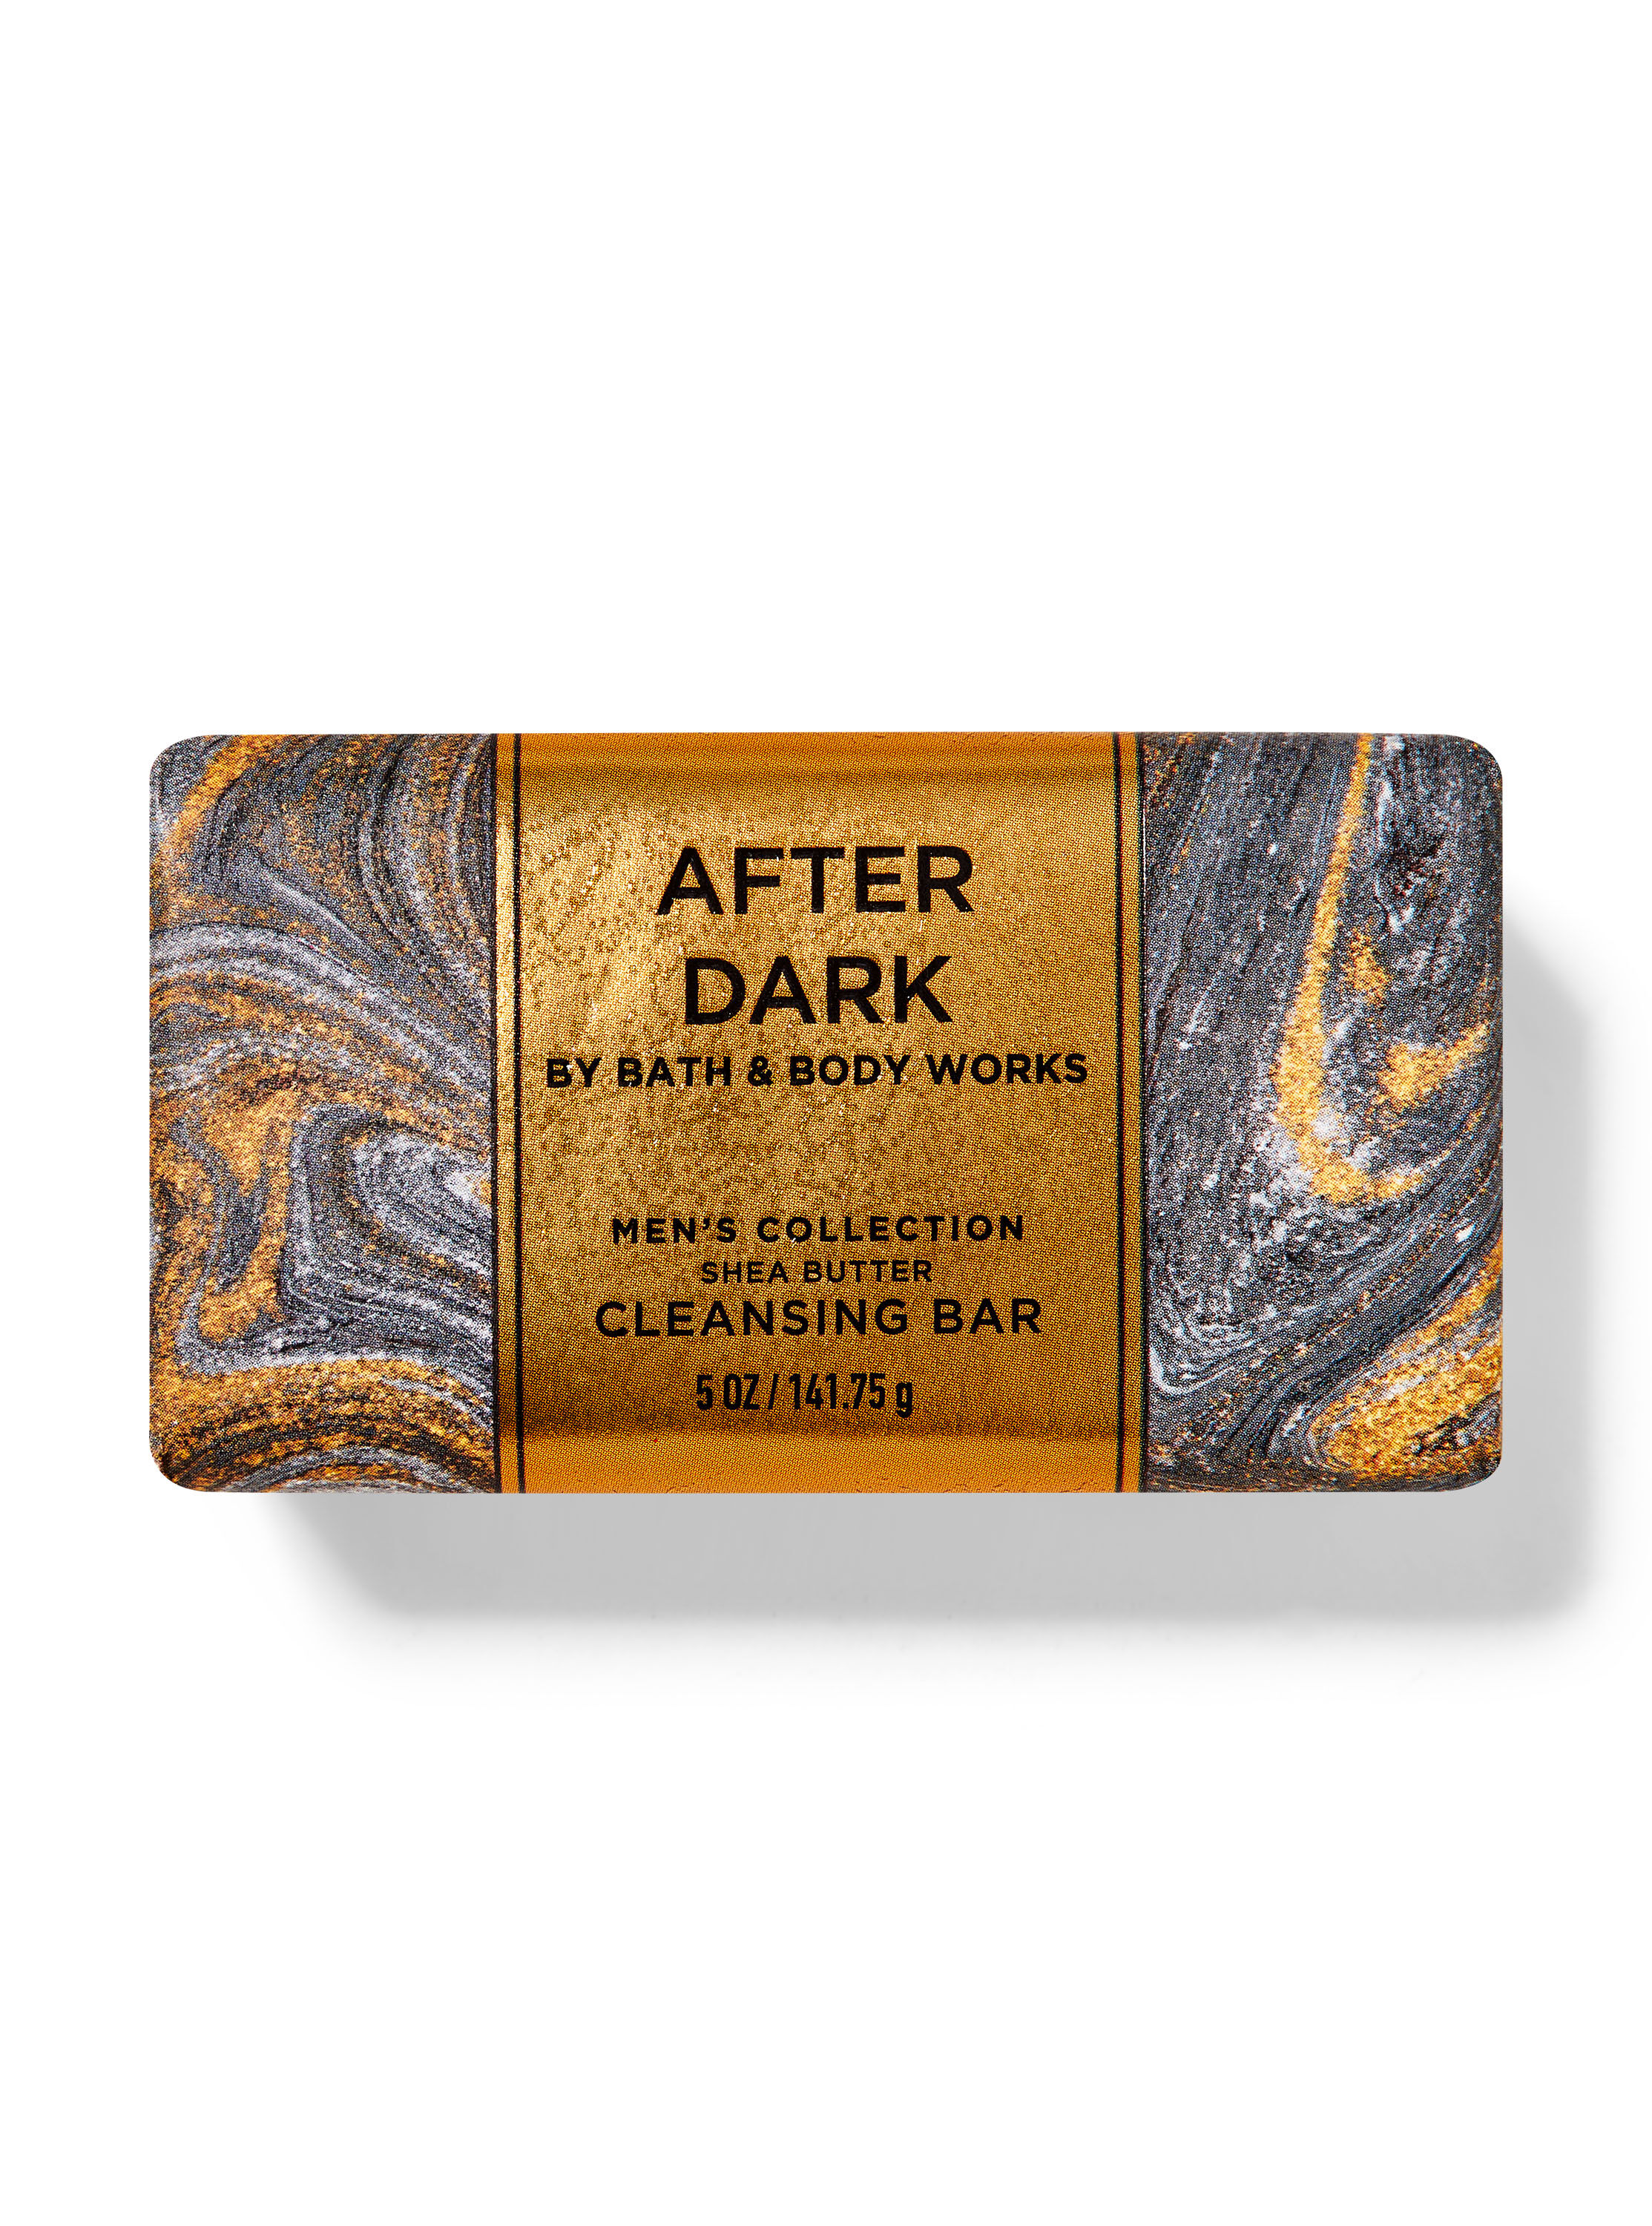 After Dark Shea Butter Cleansing Bar